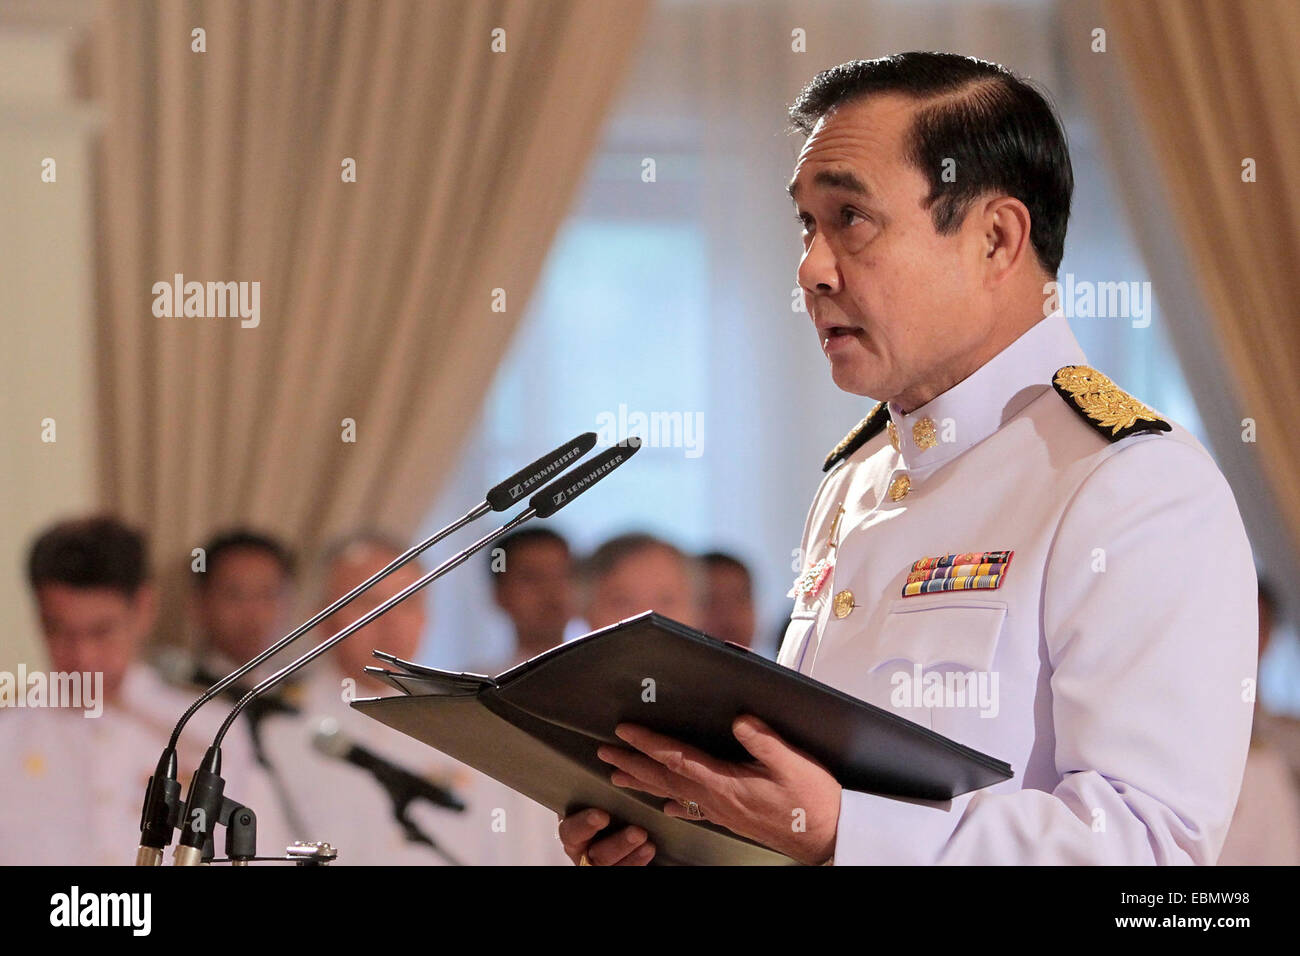 Bangkok, Tailandia. 3 dic, 2014. El Primer Ministro tailandés Gen. Prayuth Chan-ocha habla en la ceremonia de juramento de lealtad juramento a ser buenos funcionarios gubernamentales como parte del Rey Bhumibol Adulyadej, la próxima 87ª fiesta de cumpleaños en la Casa de Gobierno en Bangkok, Tailandia, diciembre 3, 2014. El rey Bhumibol Adulyadej de Tailandia podría celebrar su 87º cumpleaños el 5 de diciembre. Crédito: Rachen Sageamsak/Xinhua/Alamy Live News Foto de stock